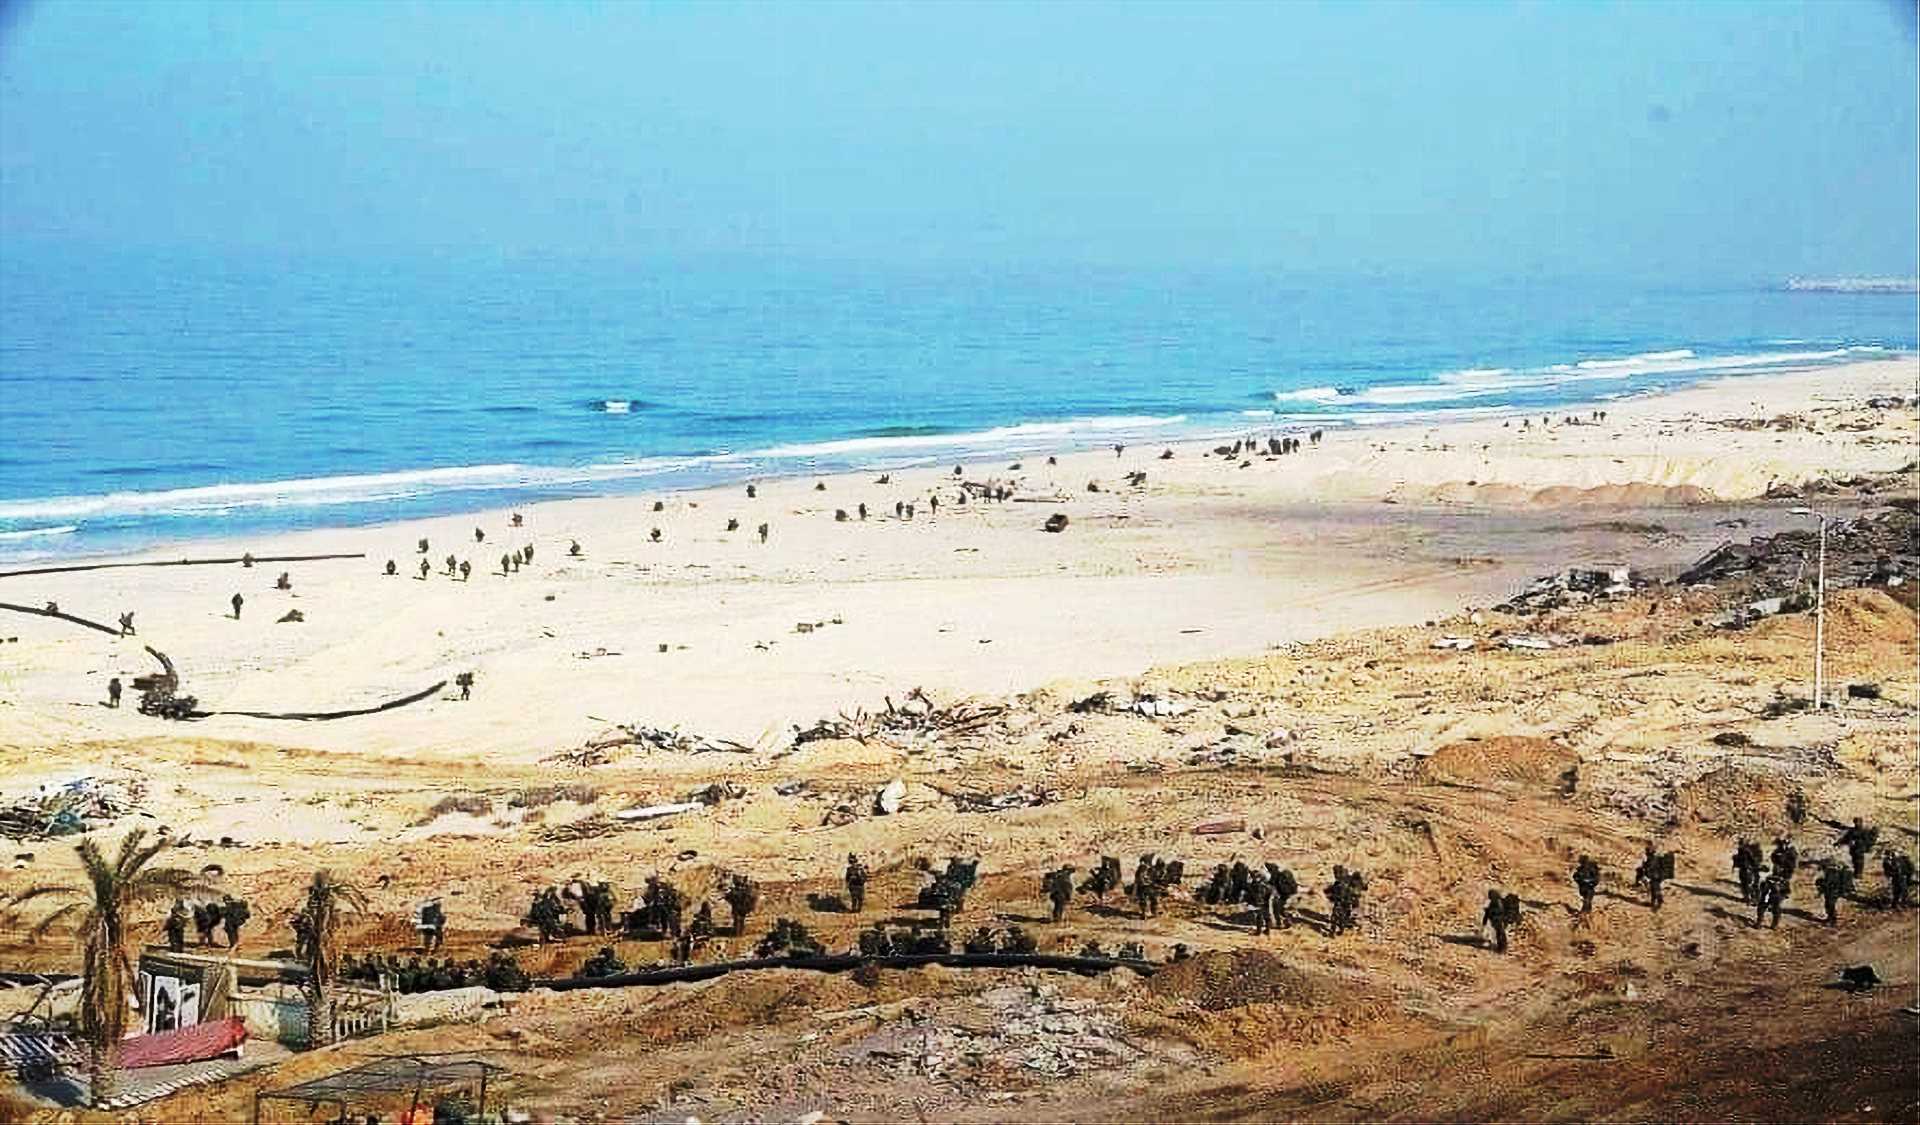 إسرائيل بدأت إغراق أراضي غزة بمياه البحر المالحة